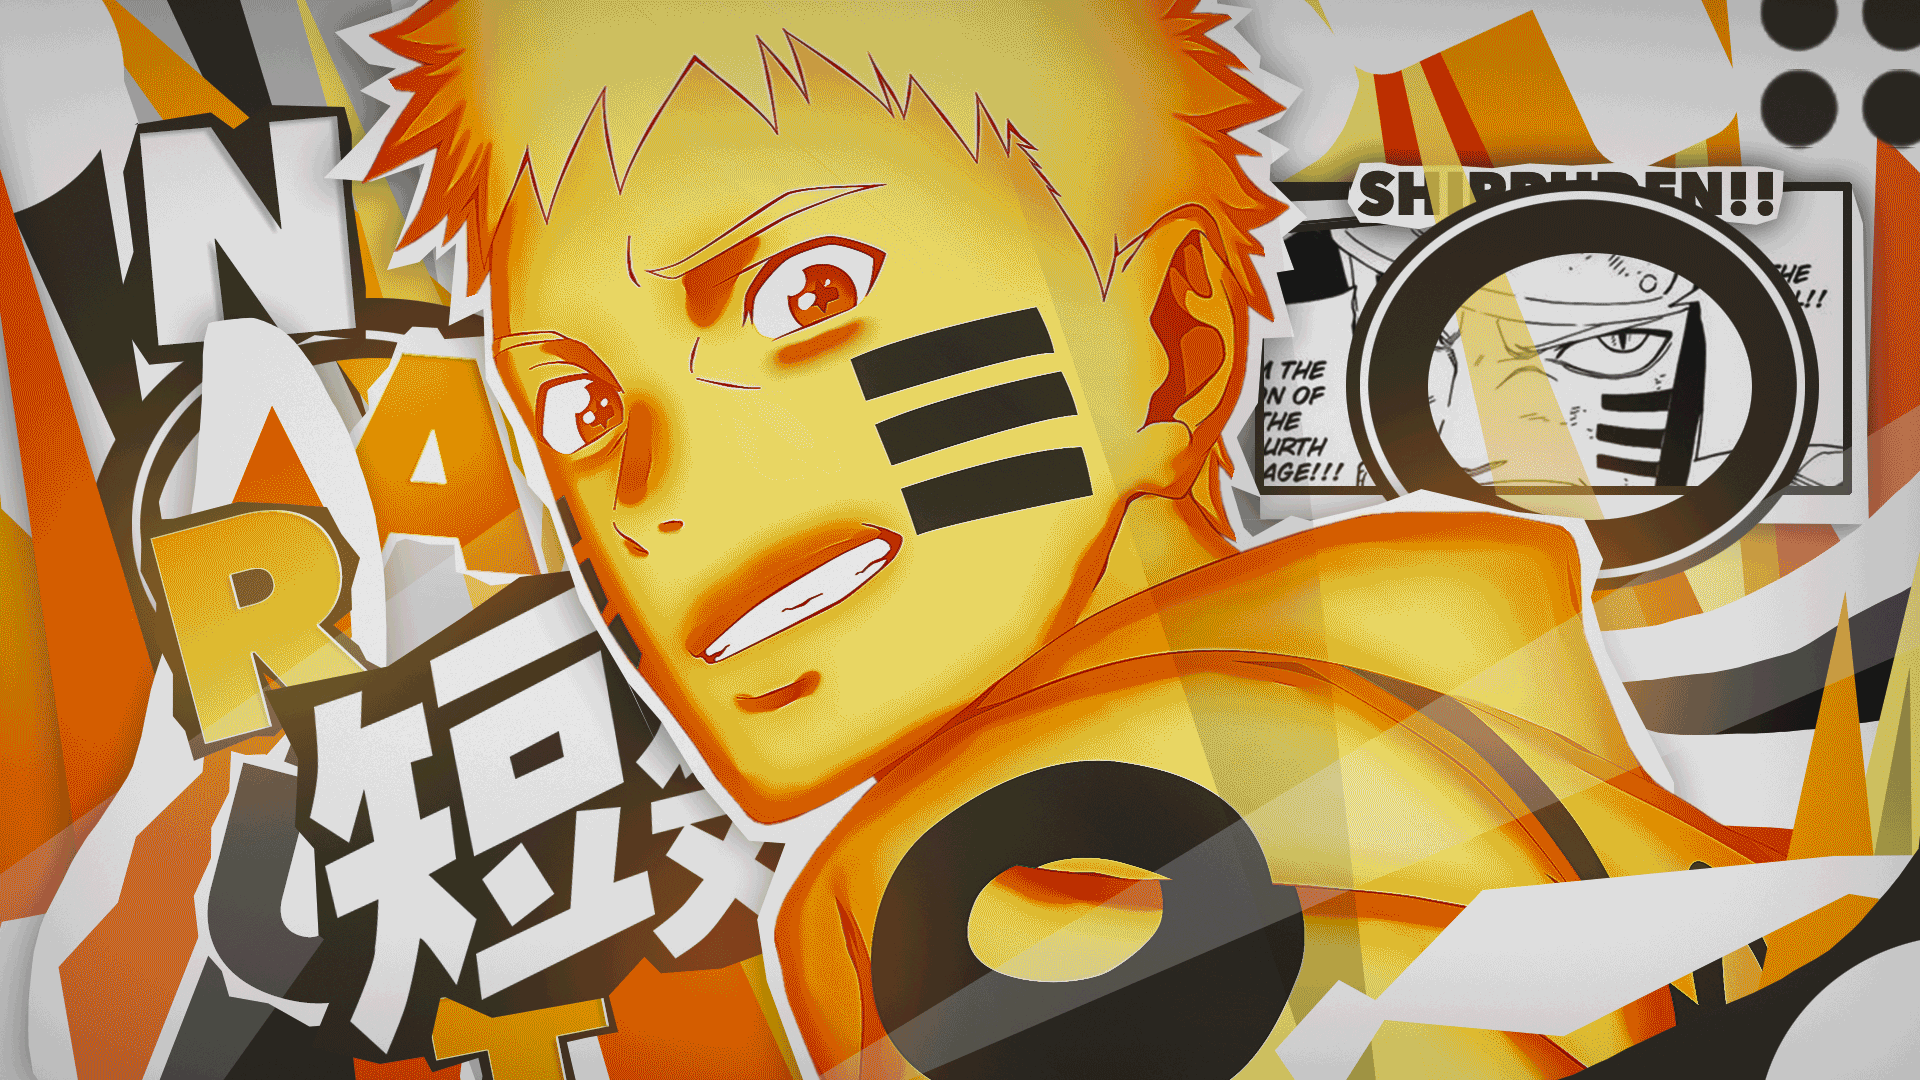 Naruto Hình nền động - một thế giới rộng lớn về phim hoạt hình Nhật Bản được yêu thích. Hãy đến với chúng tôi để khám phá những bức ảnh động đầy màu sắc và tinh tế về chủ đề Naruto, giúp bạn cảm nhận sự đặc biệt về màu sắc, hình ảnh và cảm xúc.